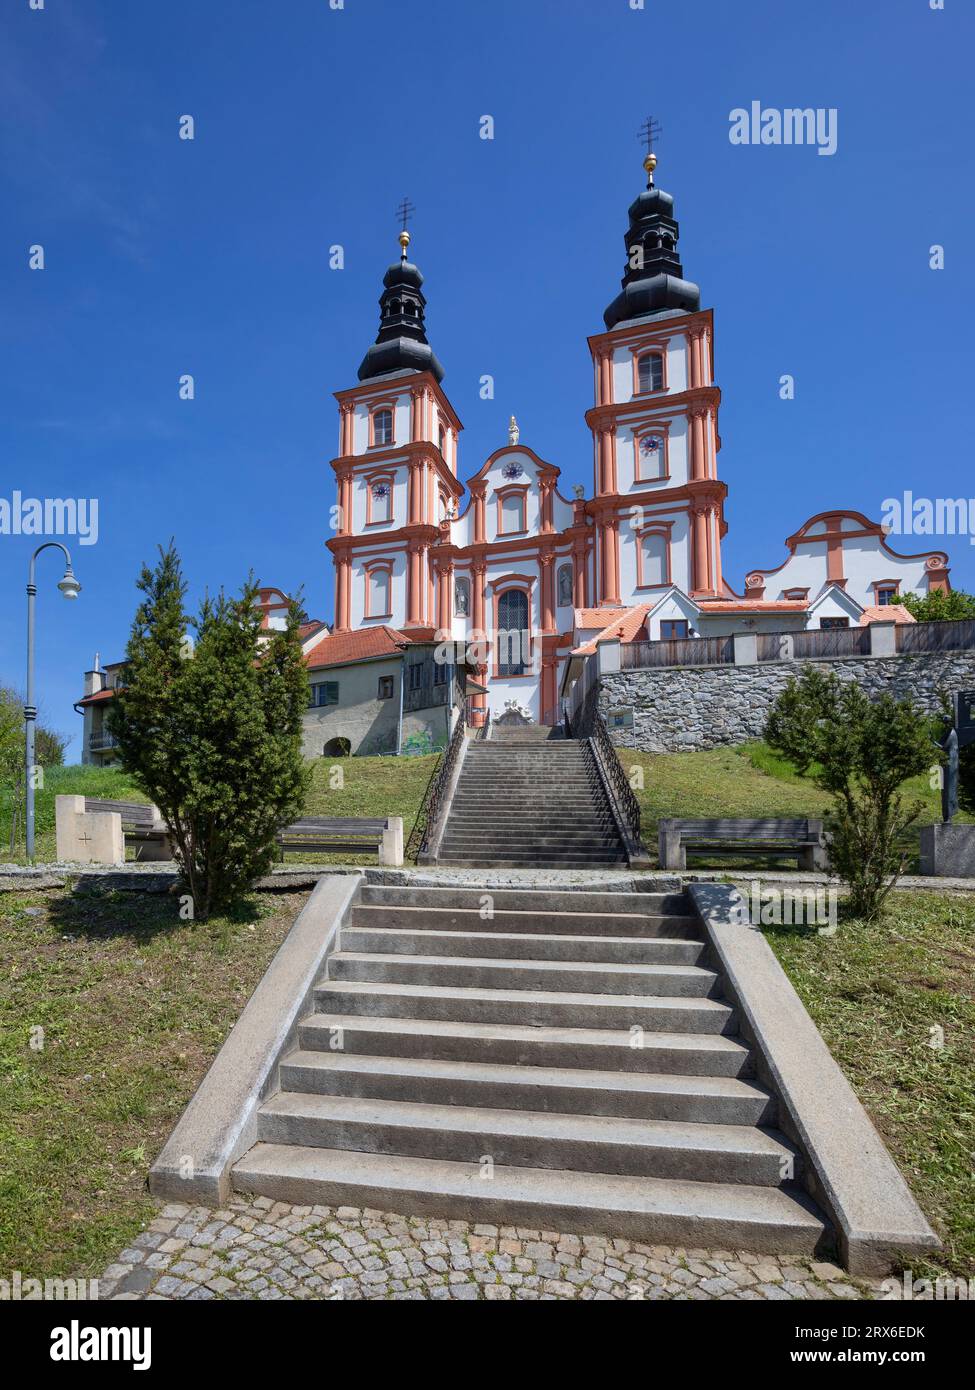 Austria, Stiria, Graz, facciata della Basilica Mariatrosta Foto Stock